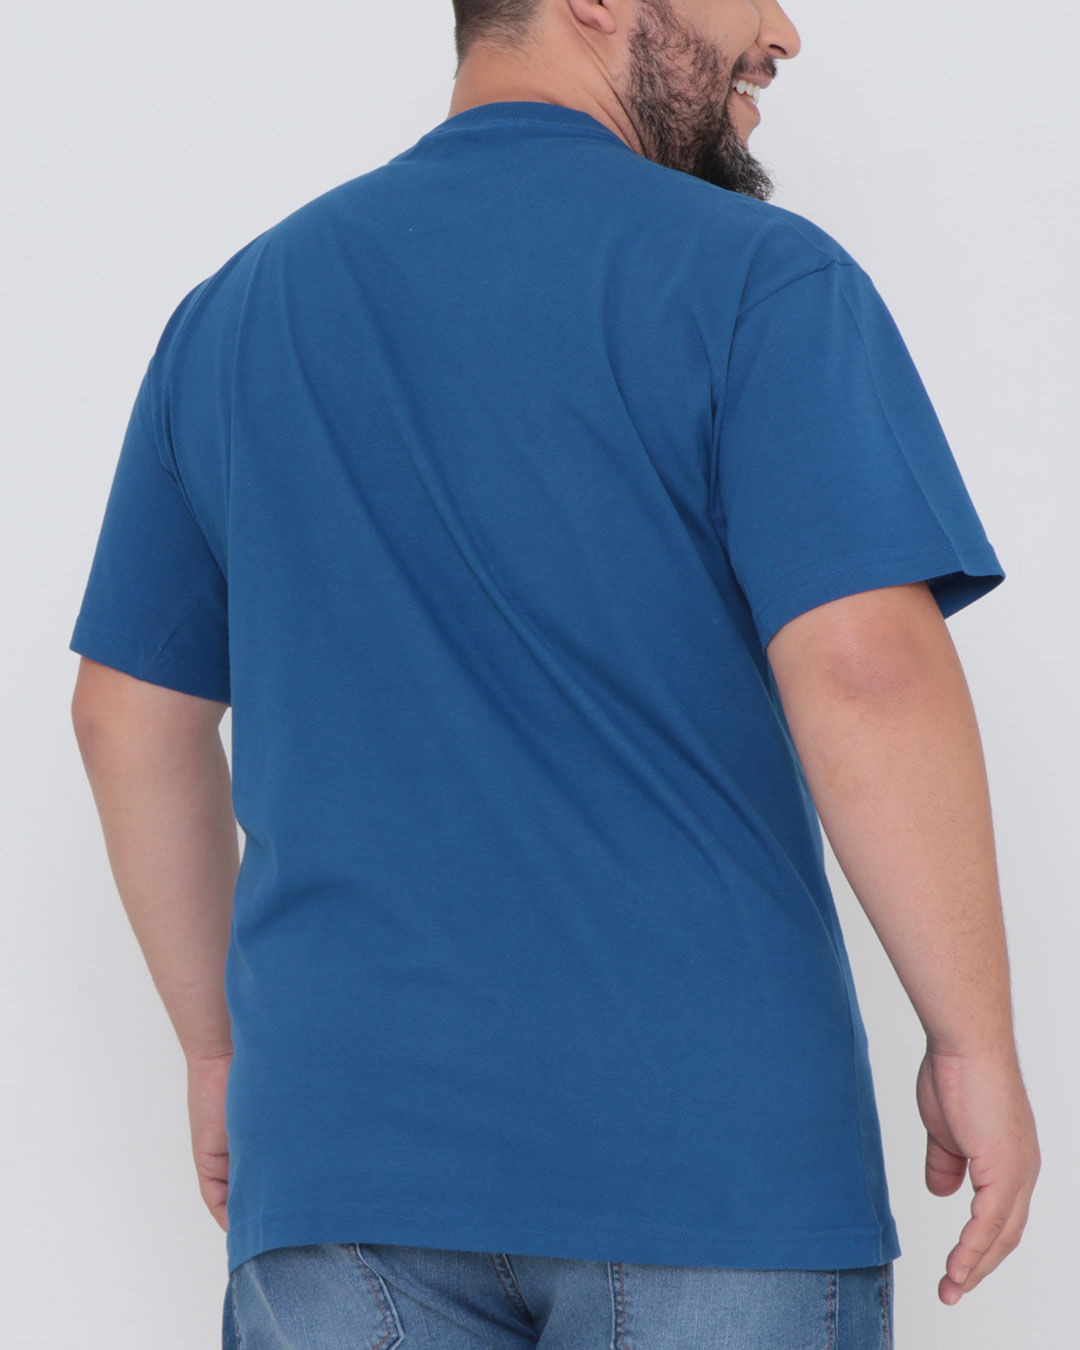 Camiseta-Plus-Size-Estampa-Fatal-Azul-